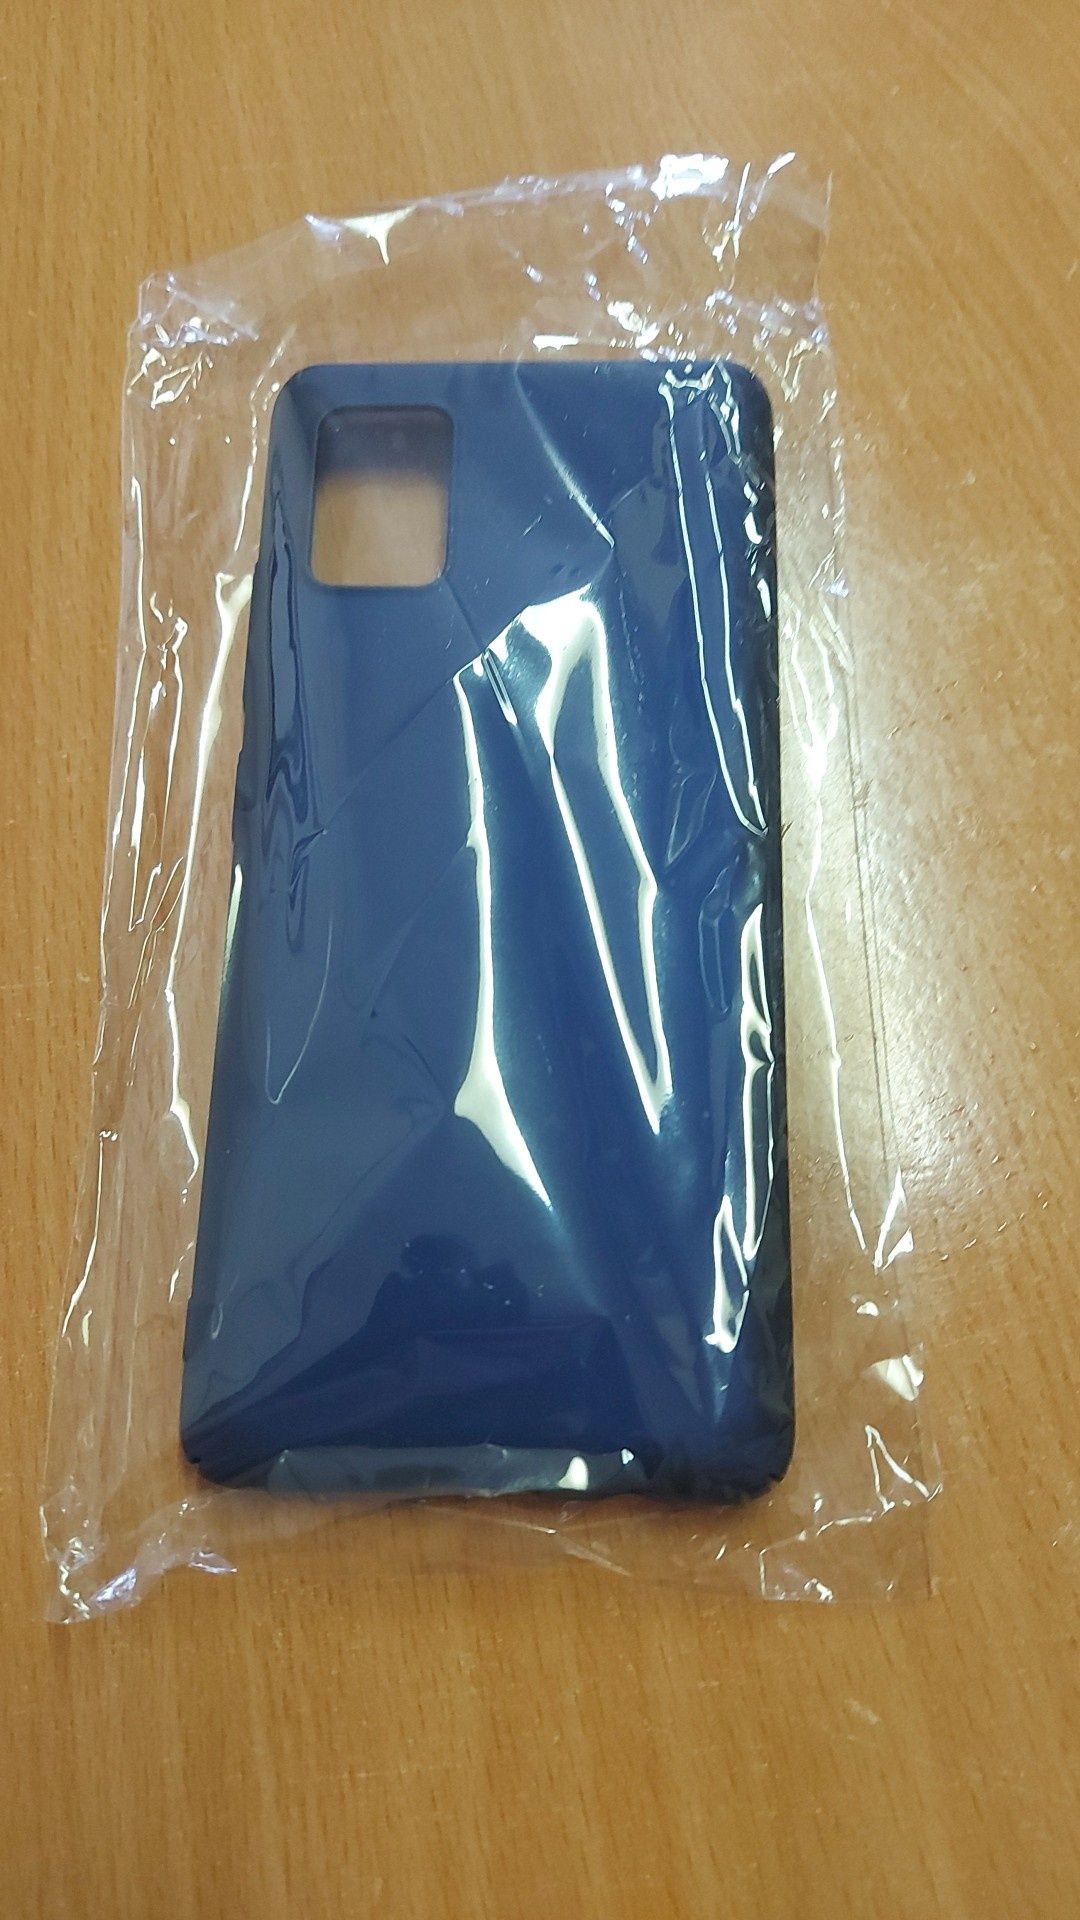 Capa Samsung A51 azul